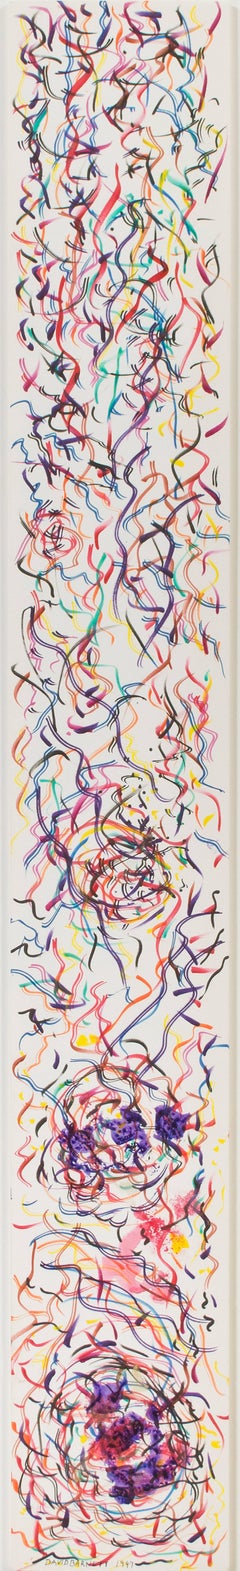 « Morph Dog Frenzy », encre, aquarelle et acrylique signée par David Barnett